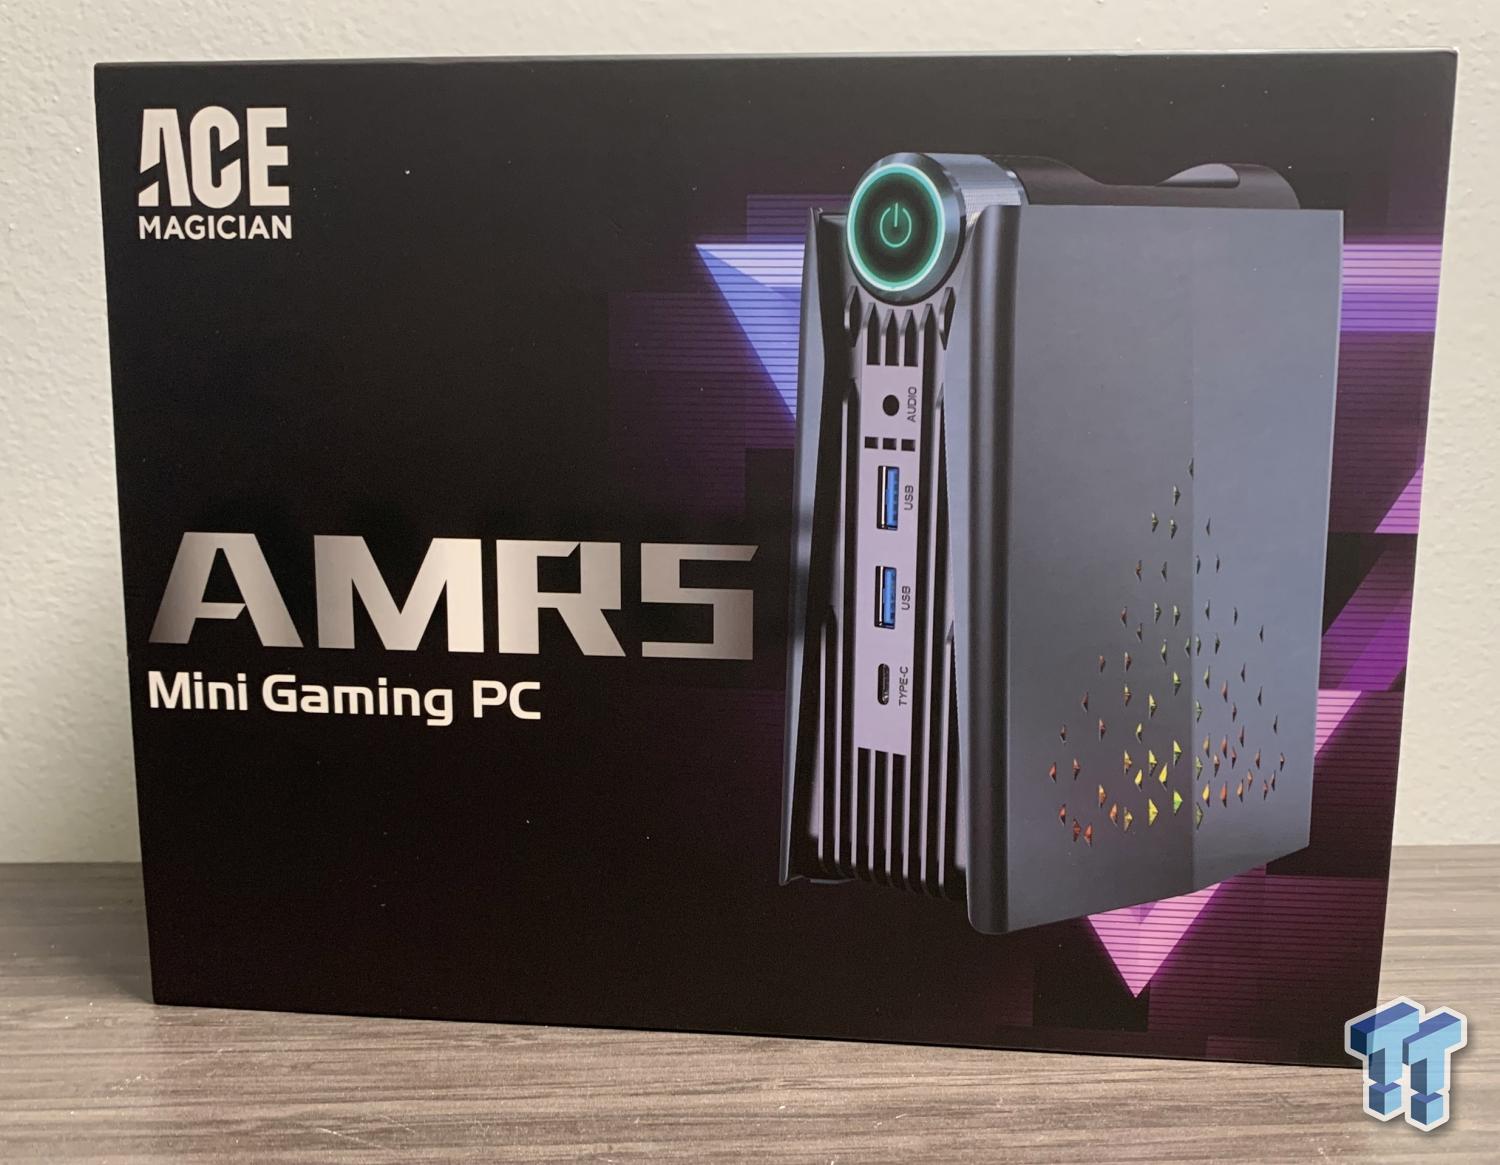  ACEMAGICIAN [Dual LAN Mini Gaming PC] AMD Ryzen 7